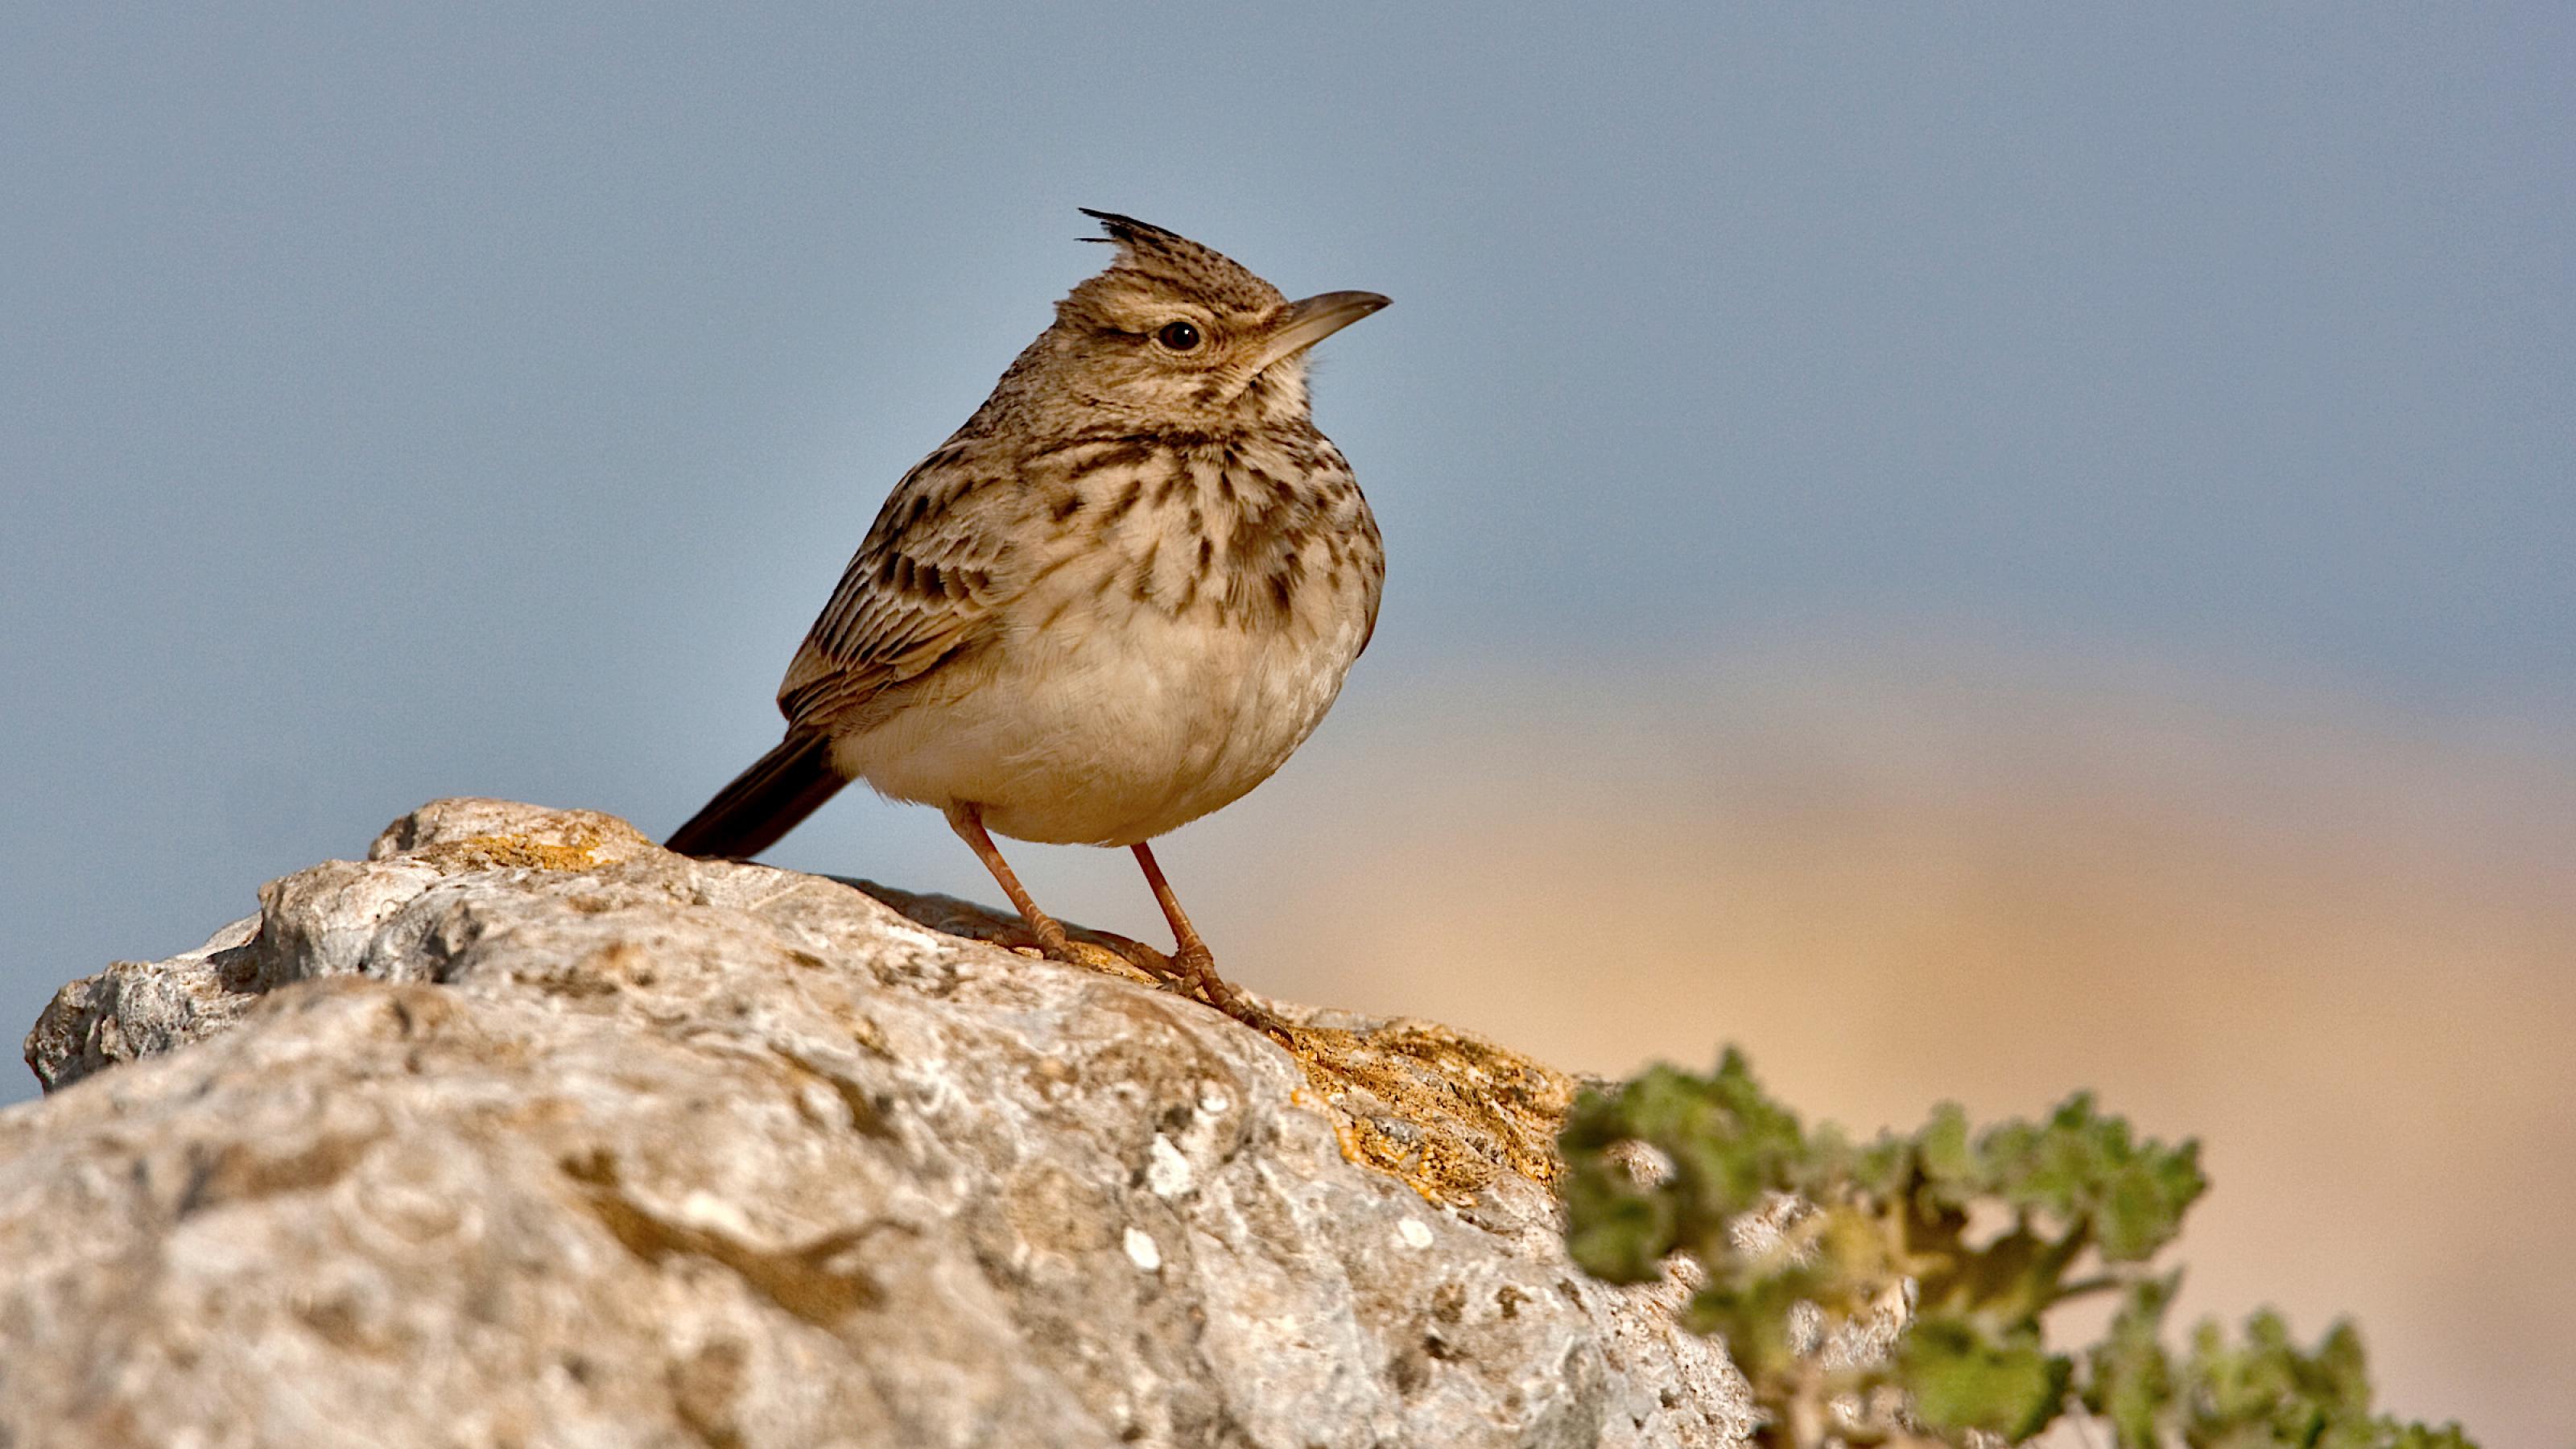 Auf einem Stein hockt ein beige-braun gesprenkelter Vogel mit kleiner, ebenfalls beige-braun gesprenkelter Kopfhaube.